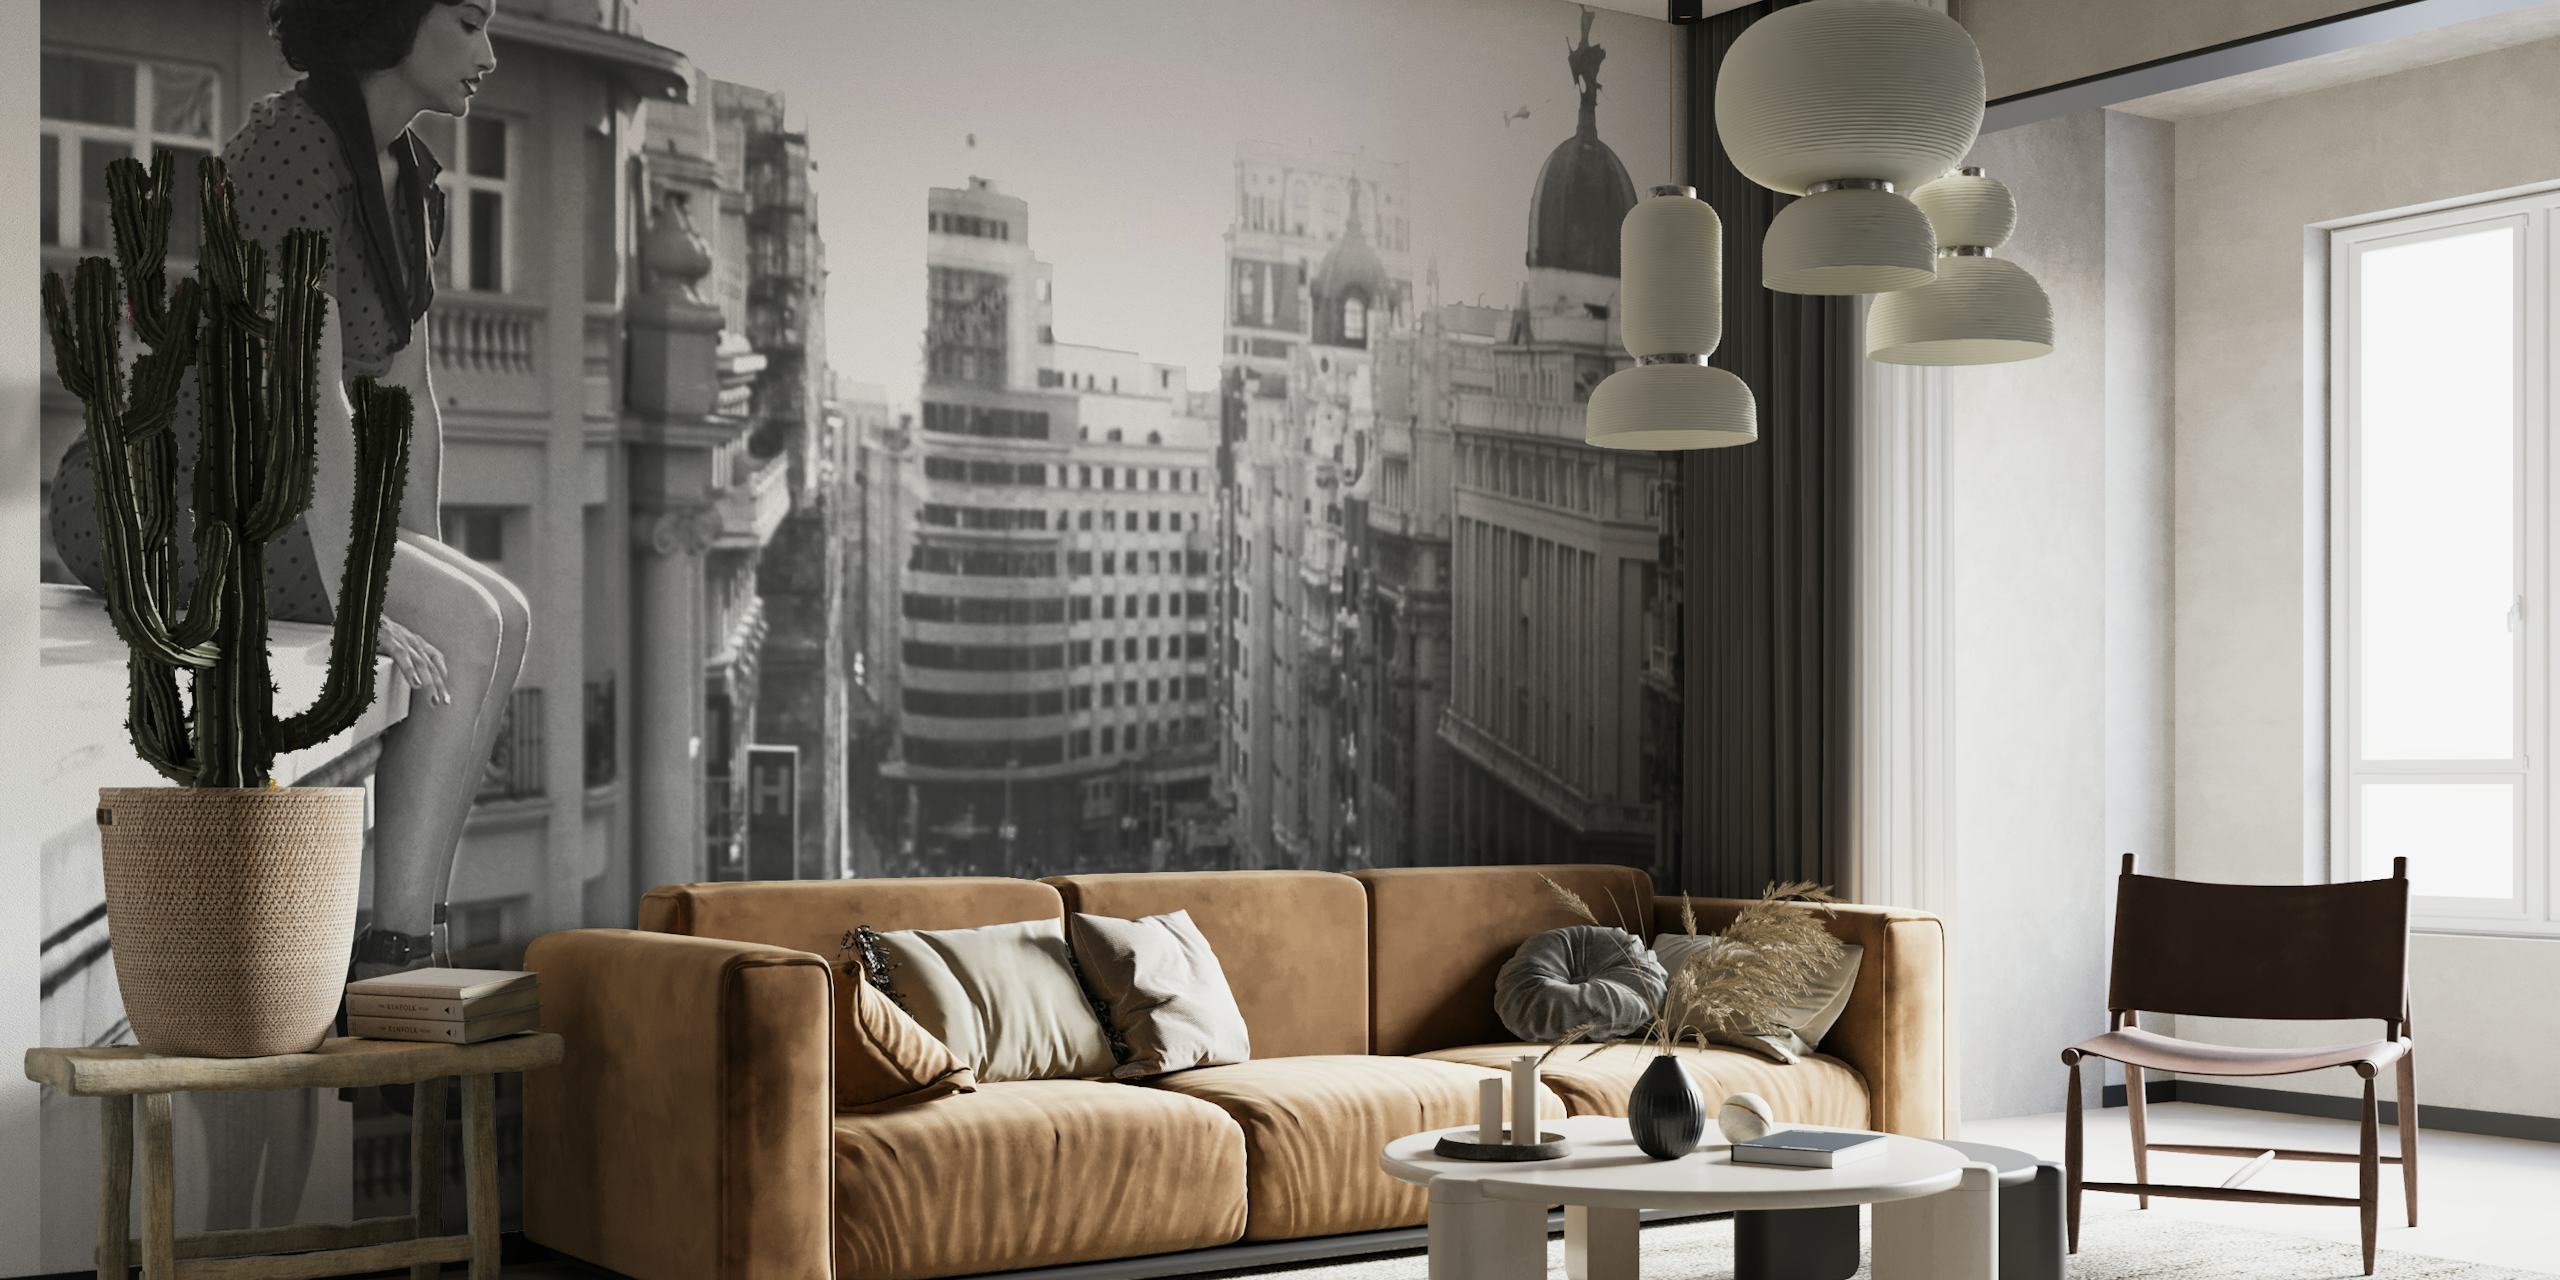 Mural en blanco y negro de un paisaje urbano que representa la energía urbana y los edificios históricos de Madrid.